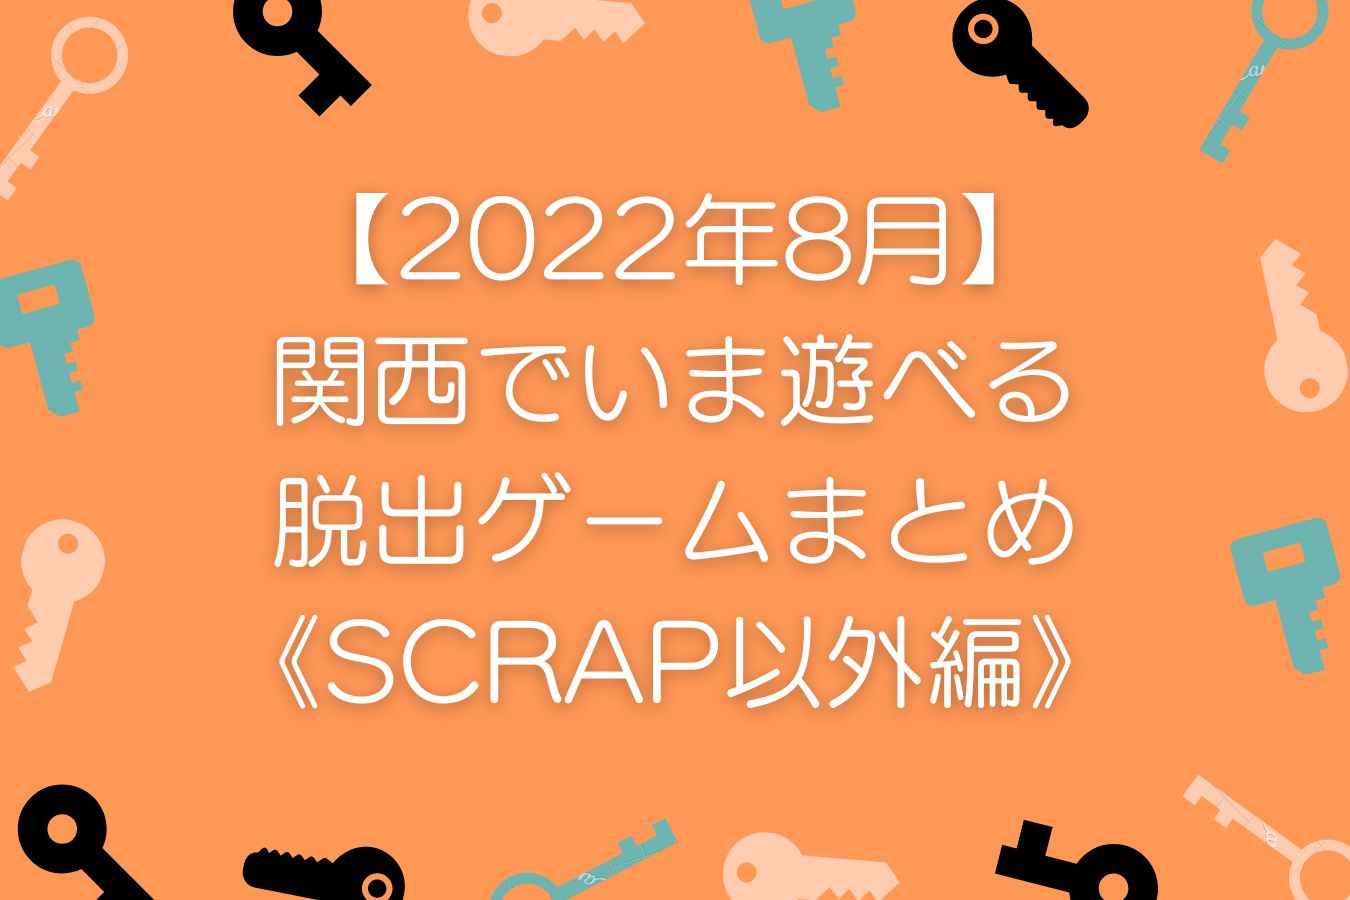 【2022年8月】-関西でいま遊べる-リアル脱出ゲームまとめ-《SCRAP以外編》